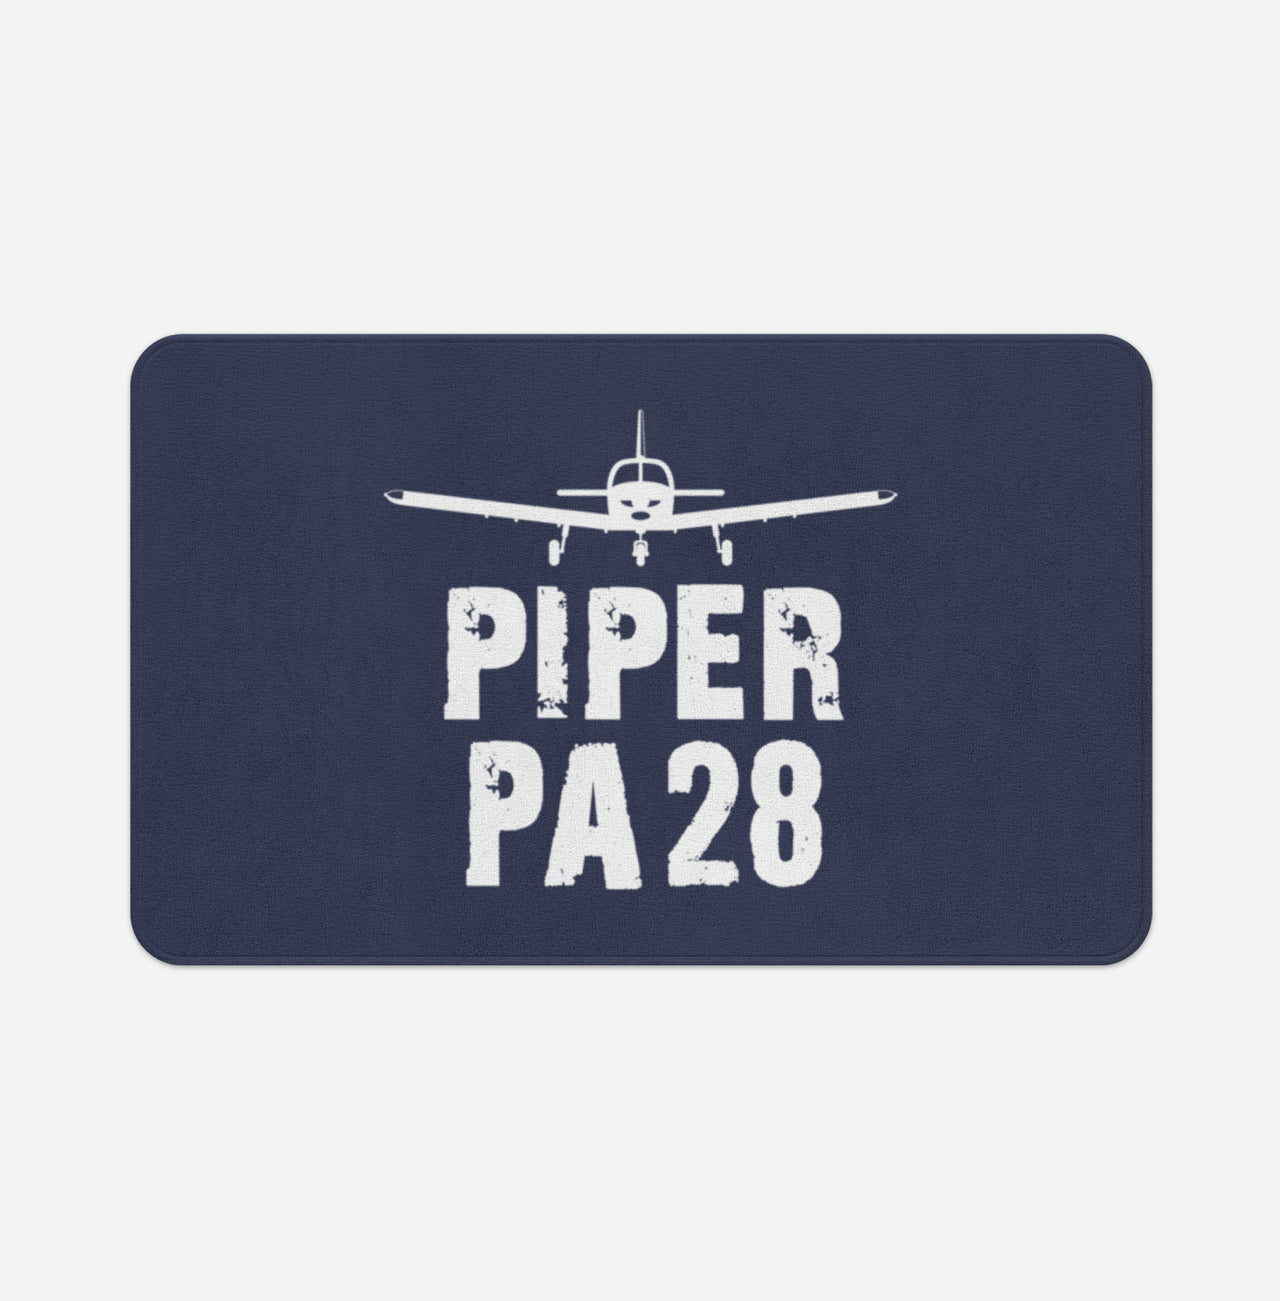 Piper PA28 & Plane Designed Bath Mats